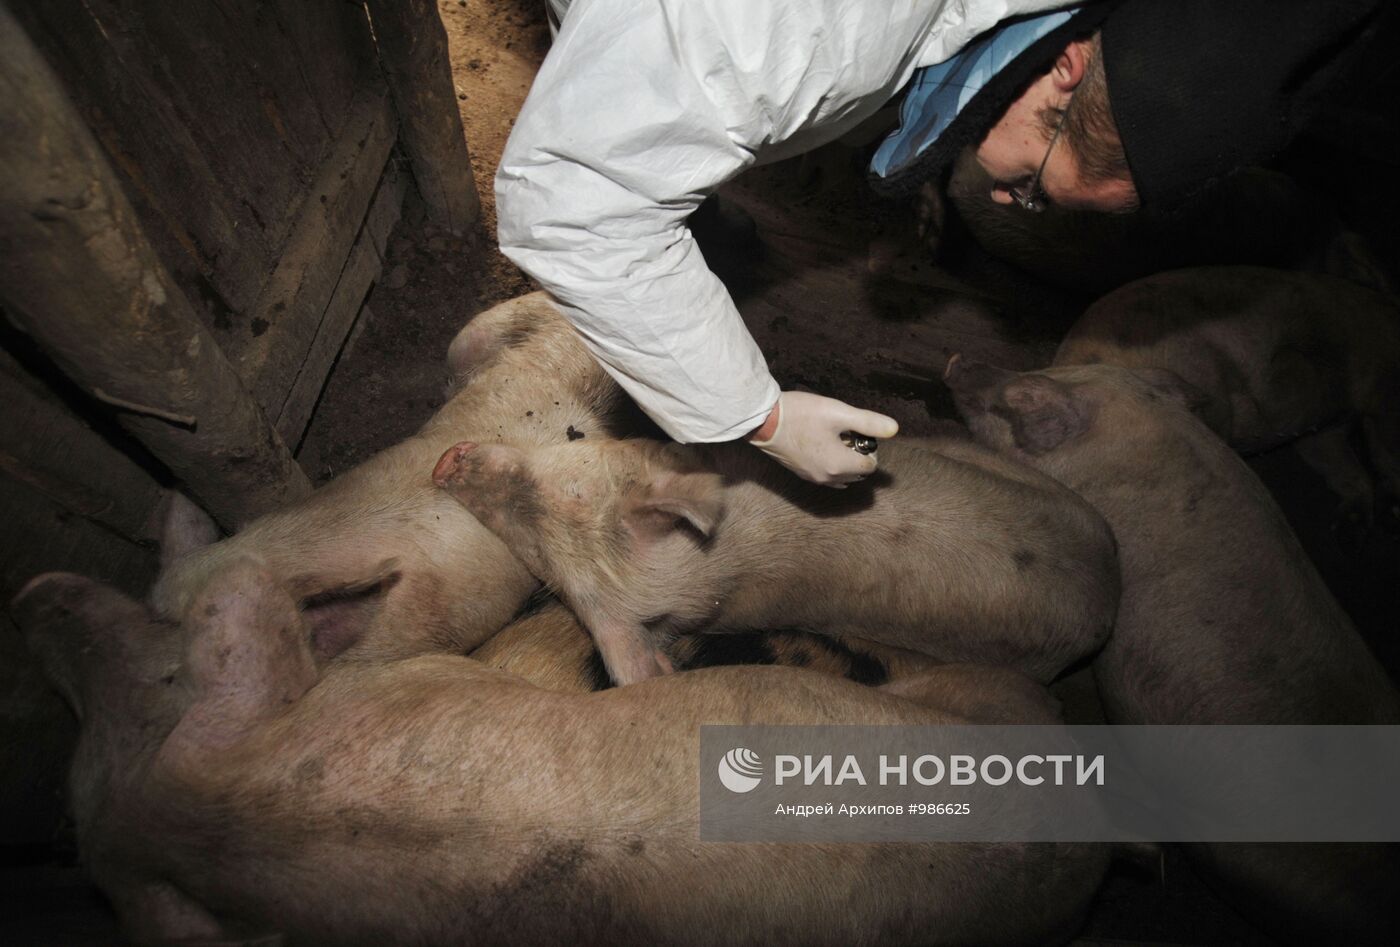 Вспышка африканской чумы свиней в Воронежской области